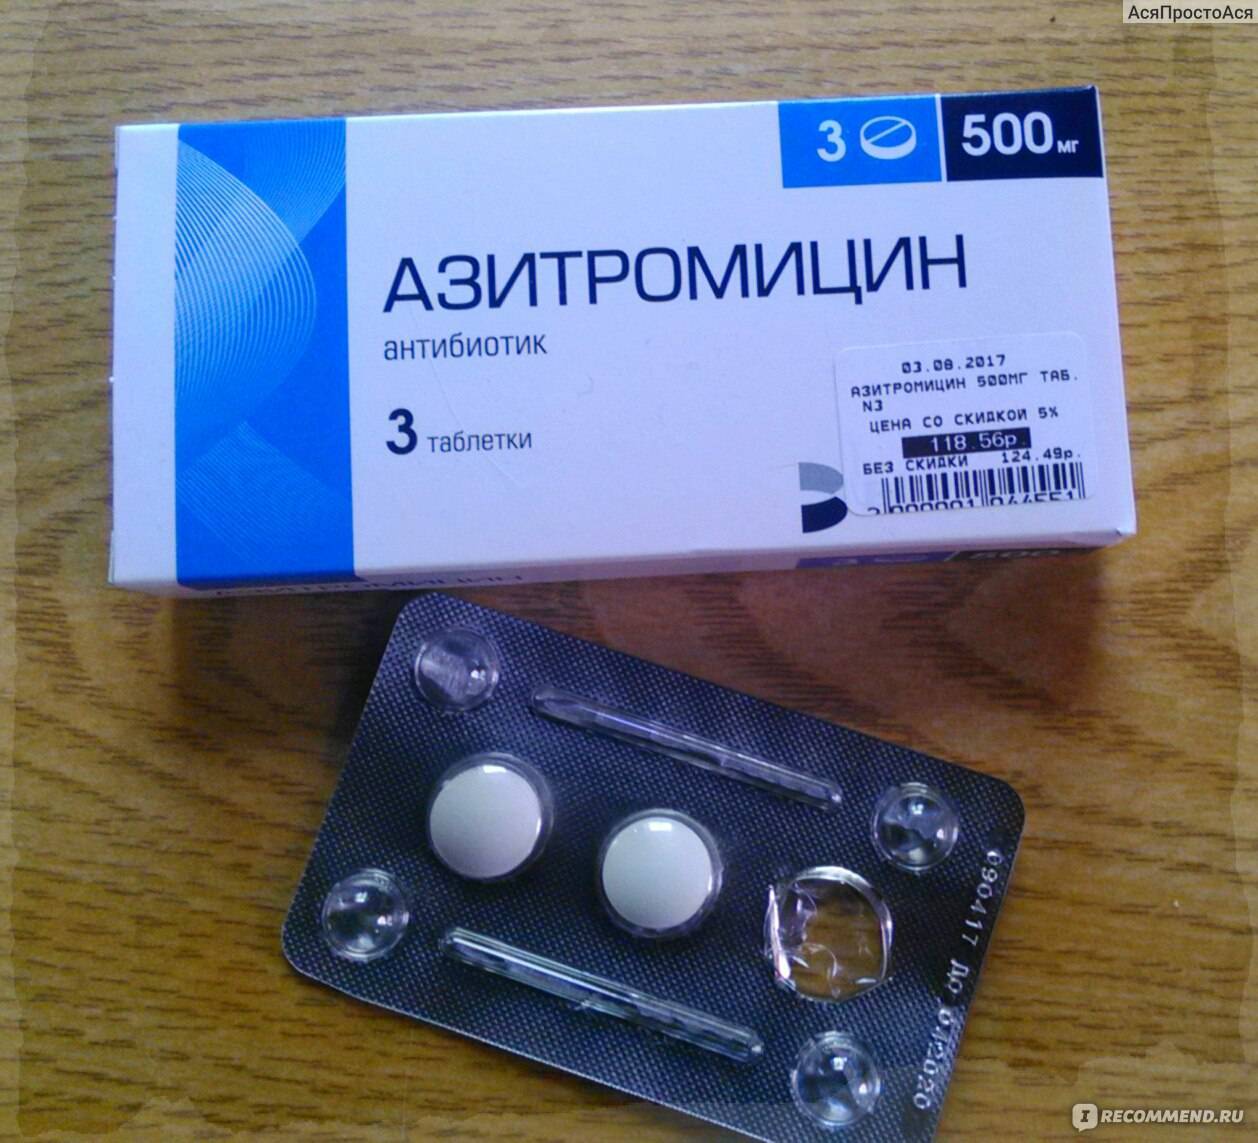 Сильные антибиотики в таблетках. Антибиотик три таблетки Азитромицин. Таблетки 3 шт антибиотики Азитромицин. Три таблетки от простуды антибиотик Азитромицин. Антибиотик azithromycin 500.